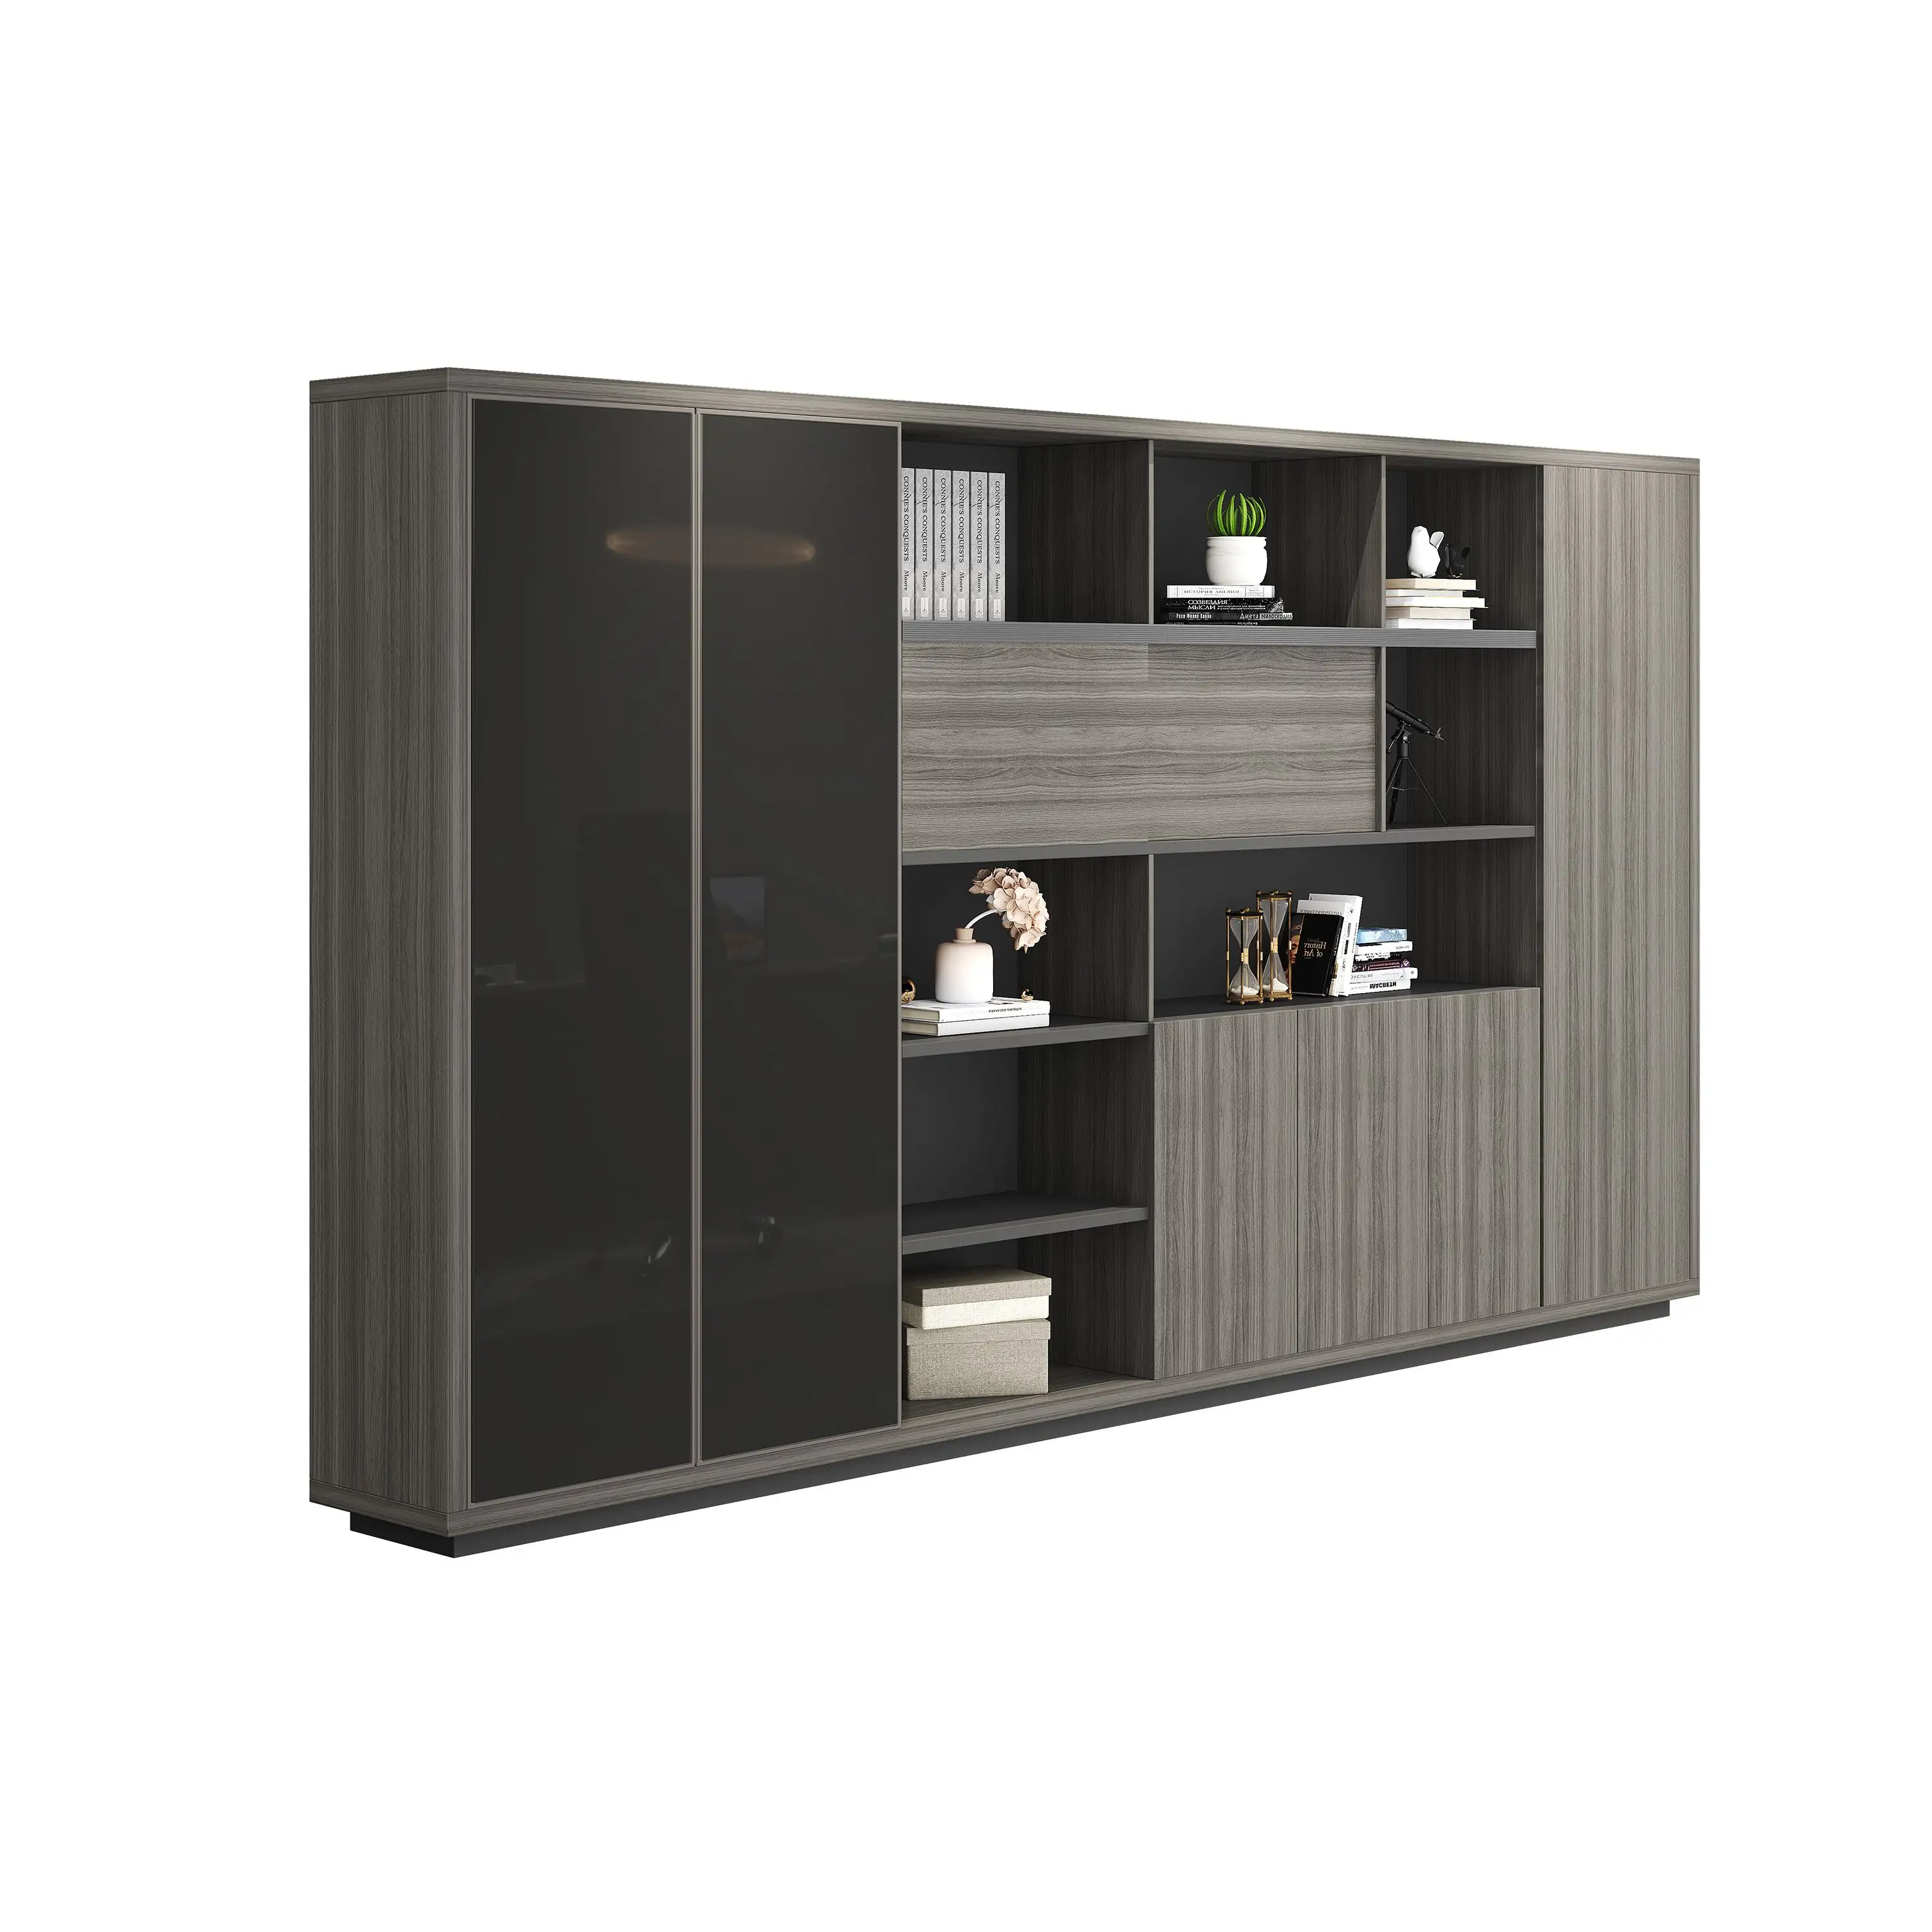 Superior Quality Furniture Manufacturer Office Filing Safe Cabinet Office File Cabinet Storage Locker